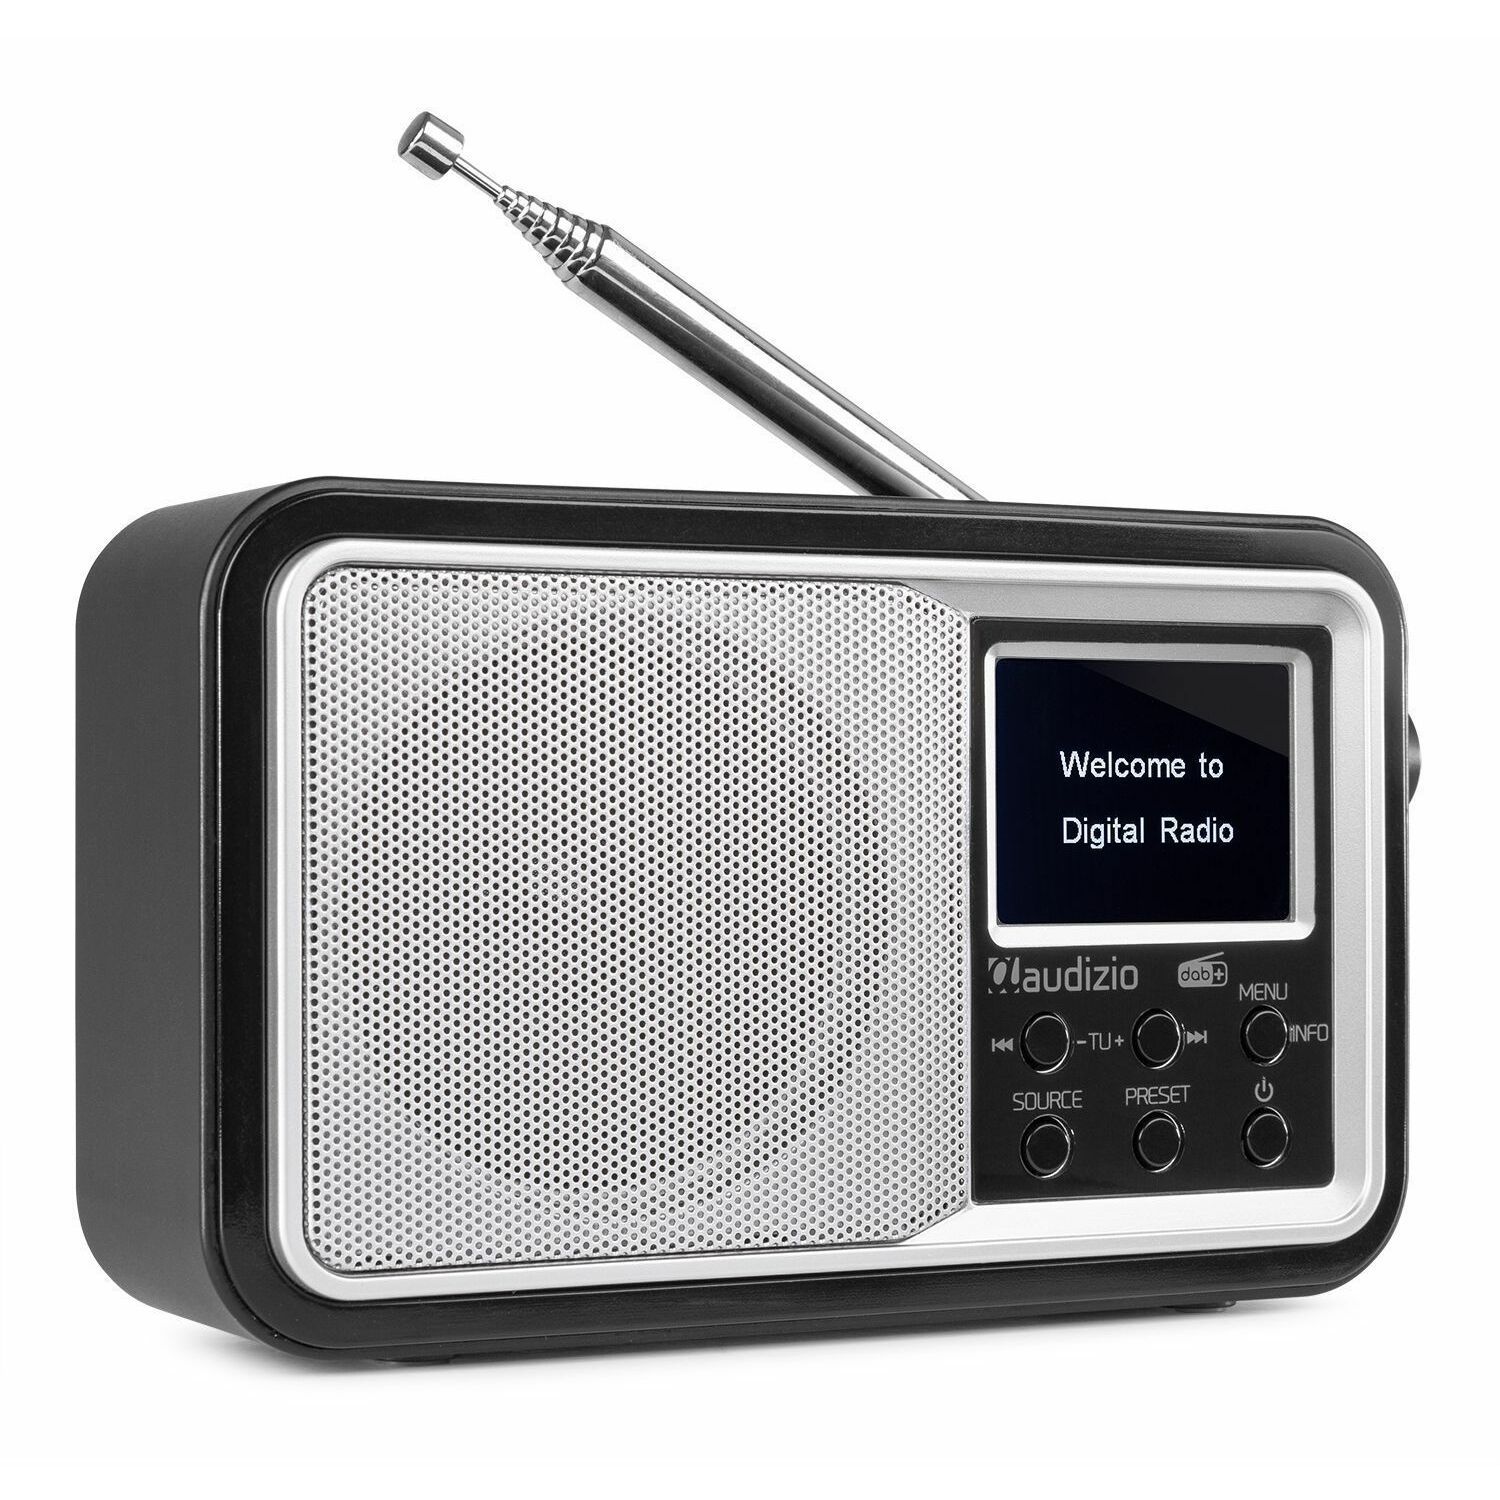 zoeken Verleiden String string Audizio Parma draagbare DAB radio met Bluetooth en FM radio - Zilver kopen?